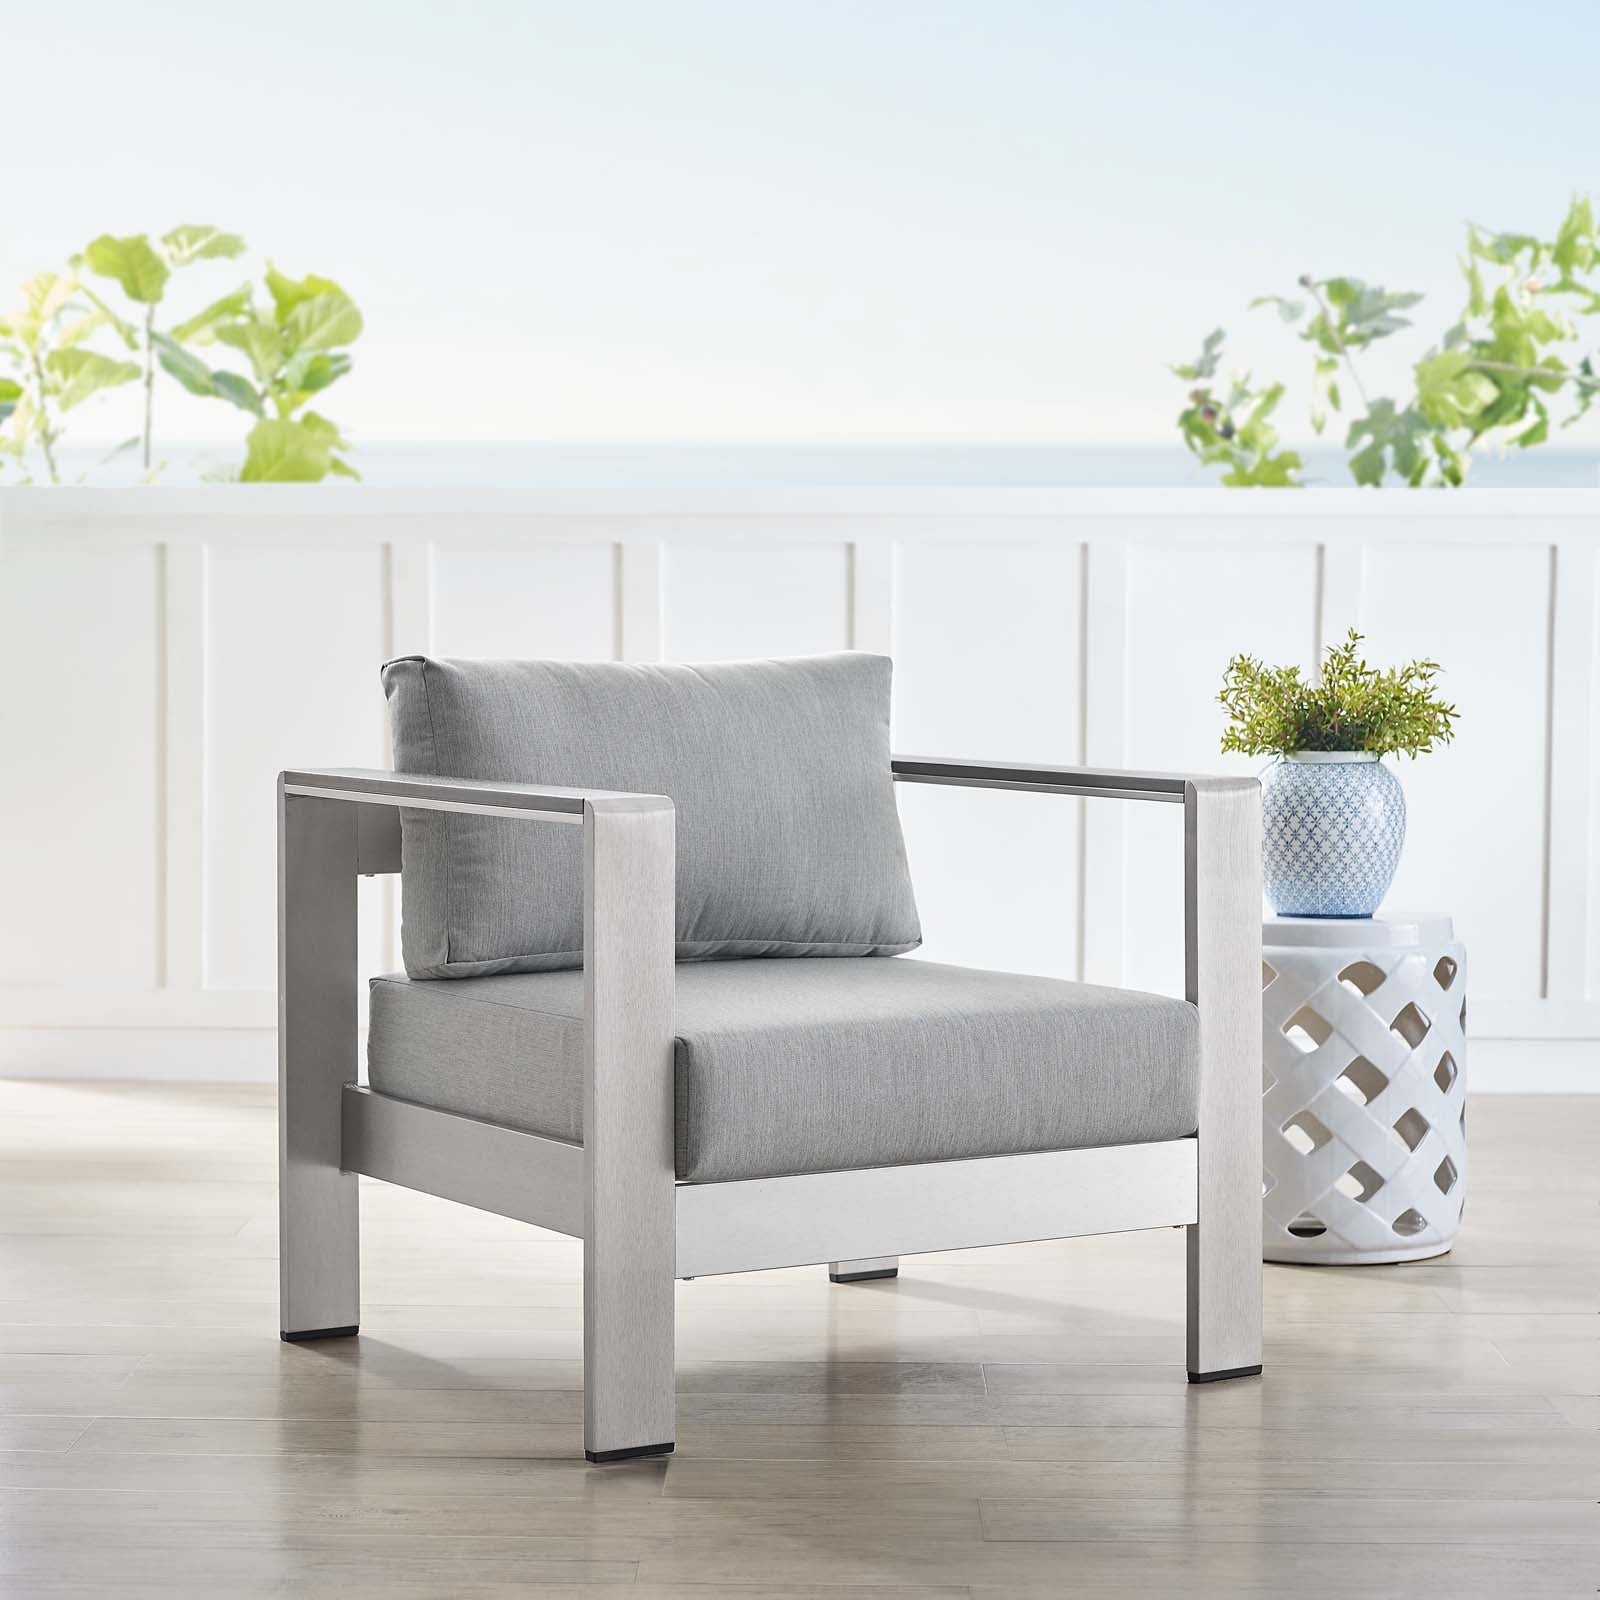 Modway Outdoor Chairs - Shore Sunbrella Fabric Aluminum Outdoor Patio Armchair Silver Gray